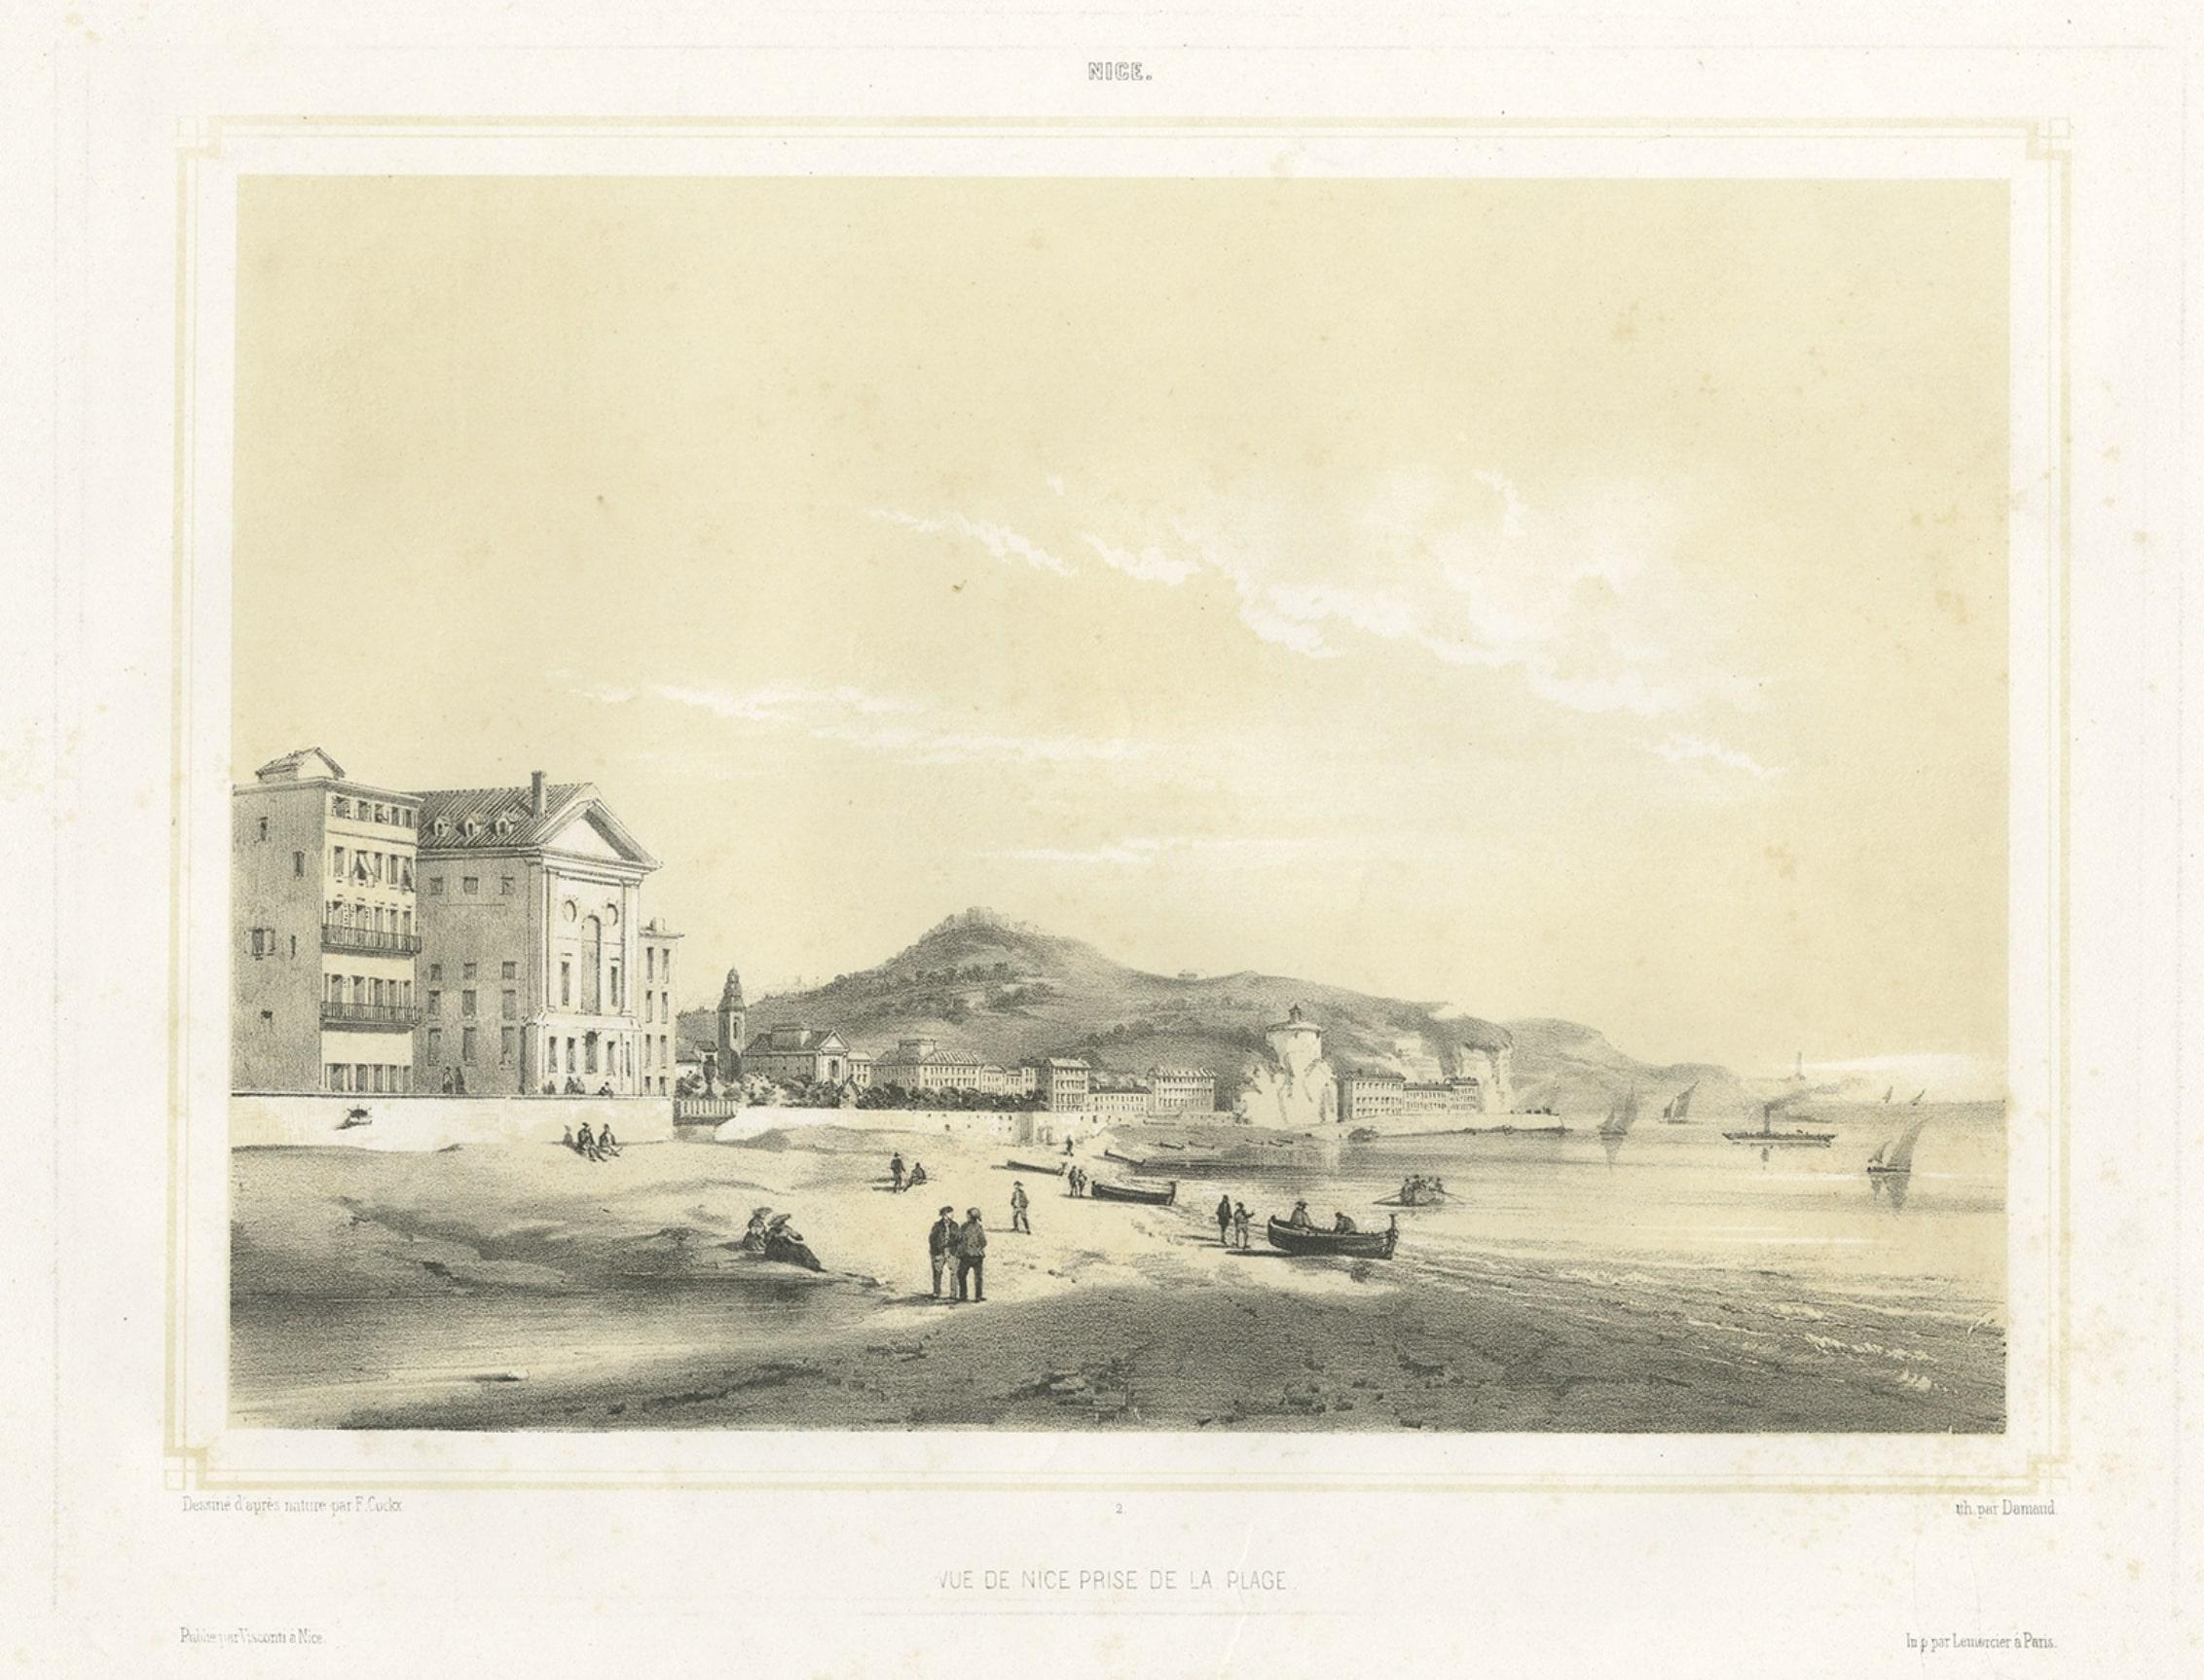 Impression ancienne de la ville de Nice depuis la plage, France, 1855